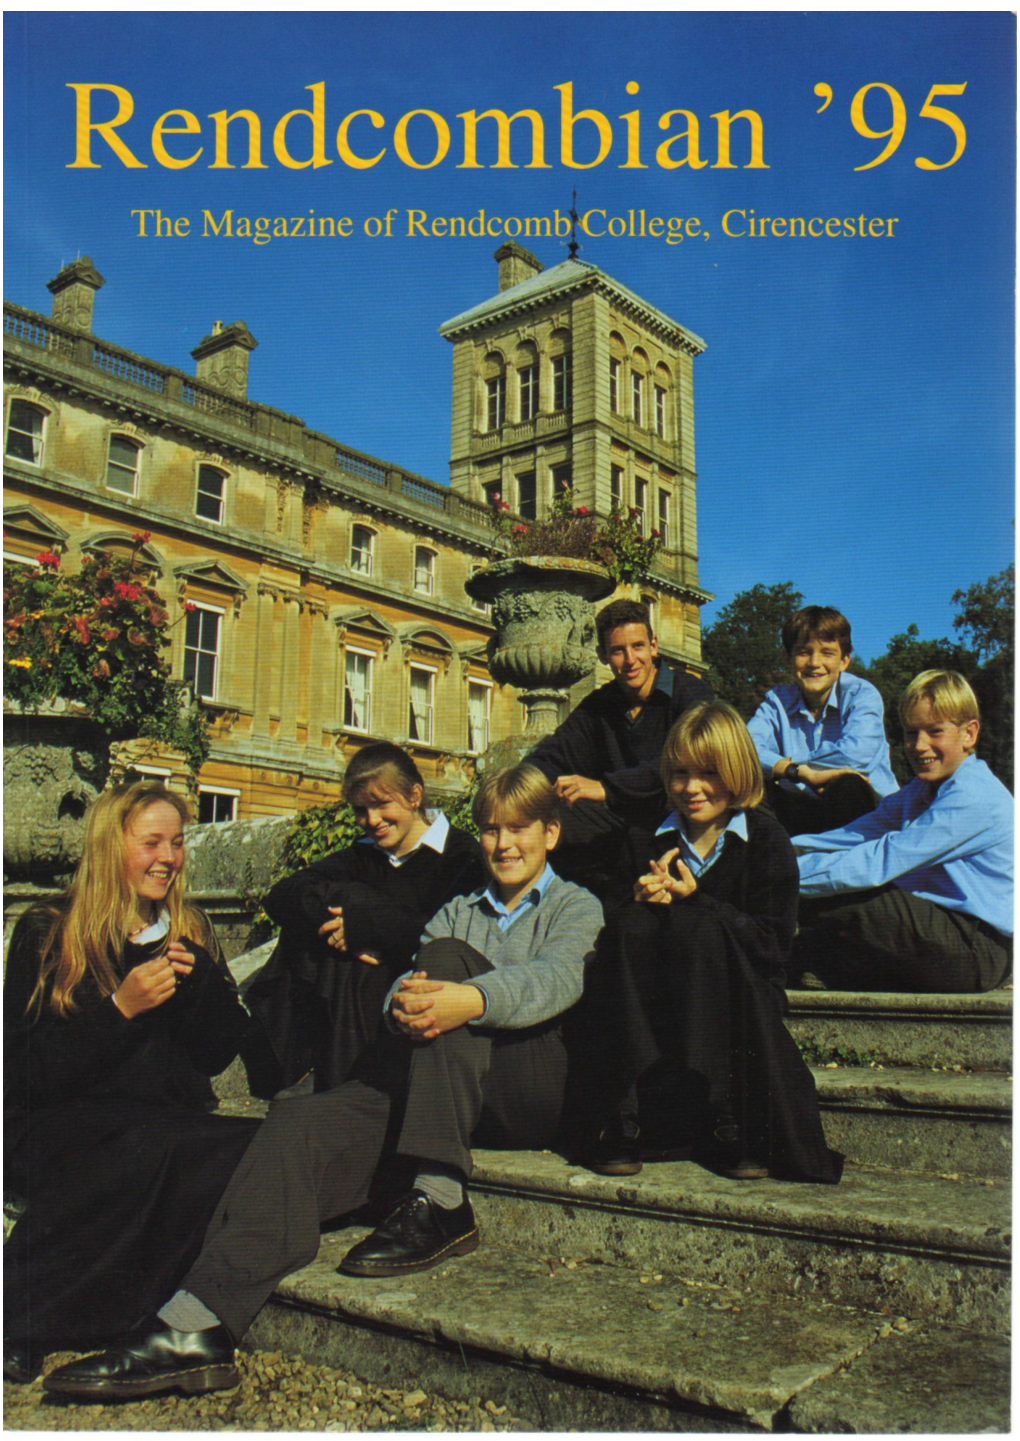 Rendcomb College Rendcombian 1995 Magazine